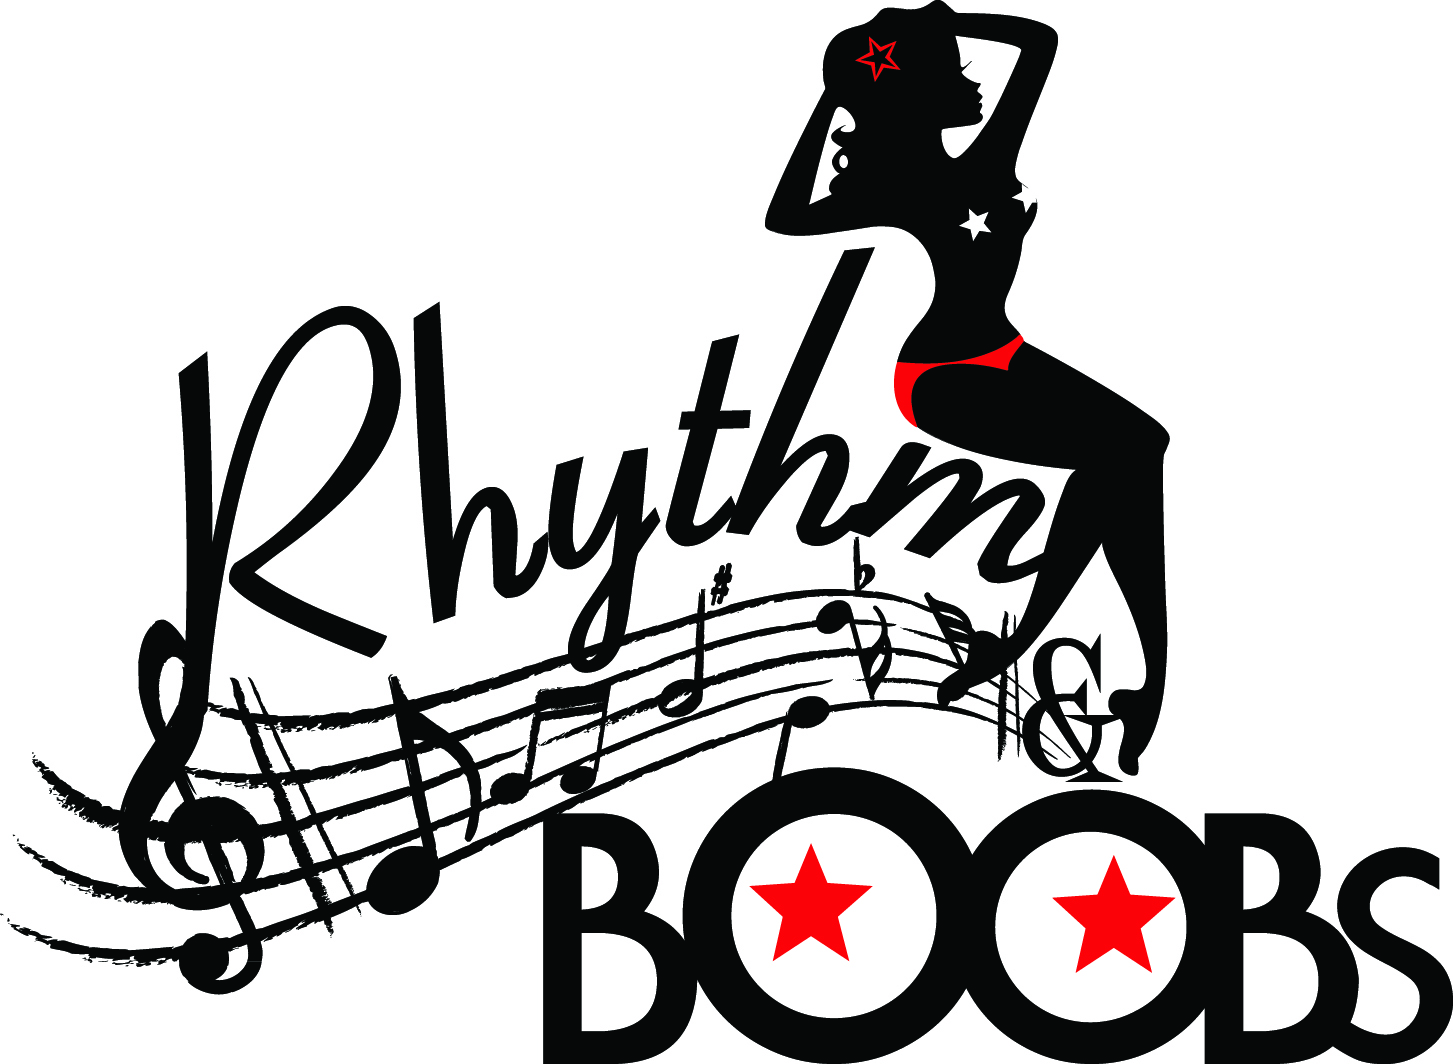 Rhythm_Boobs